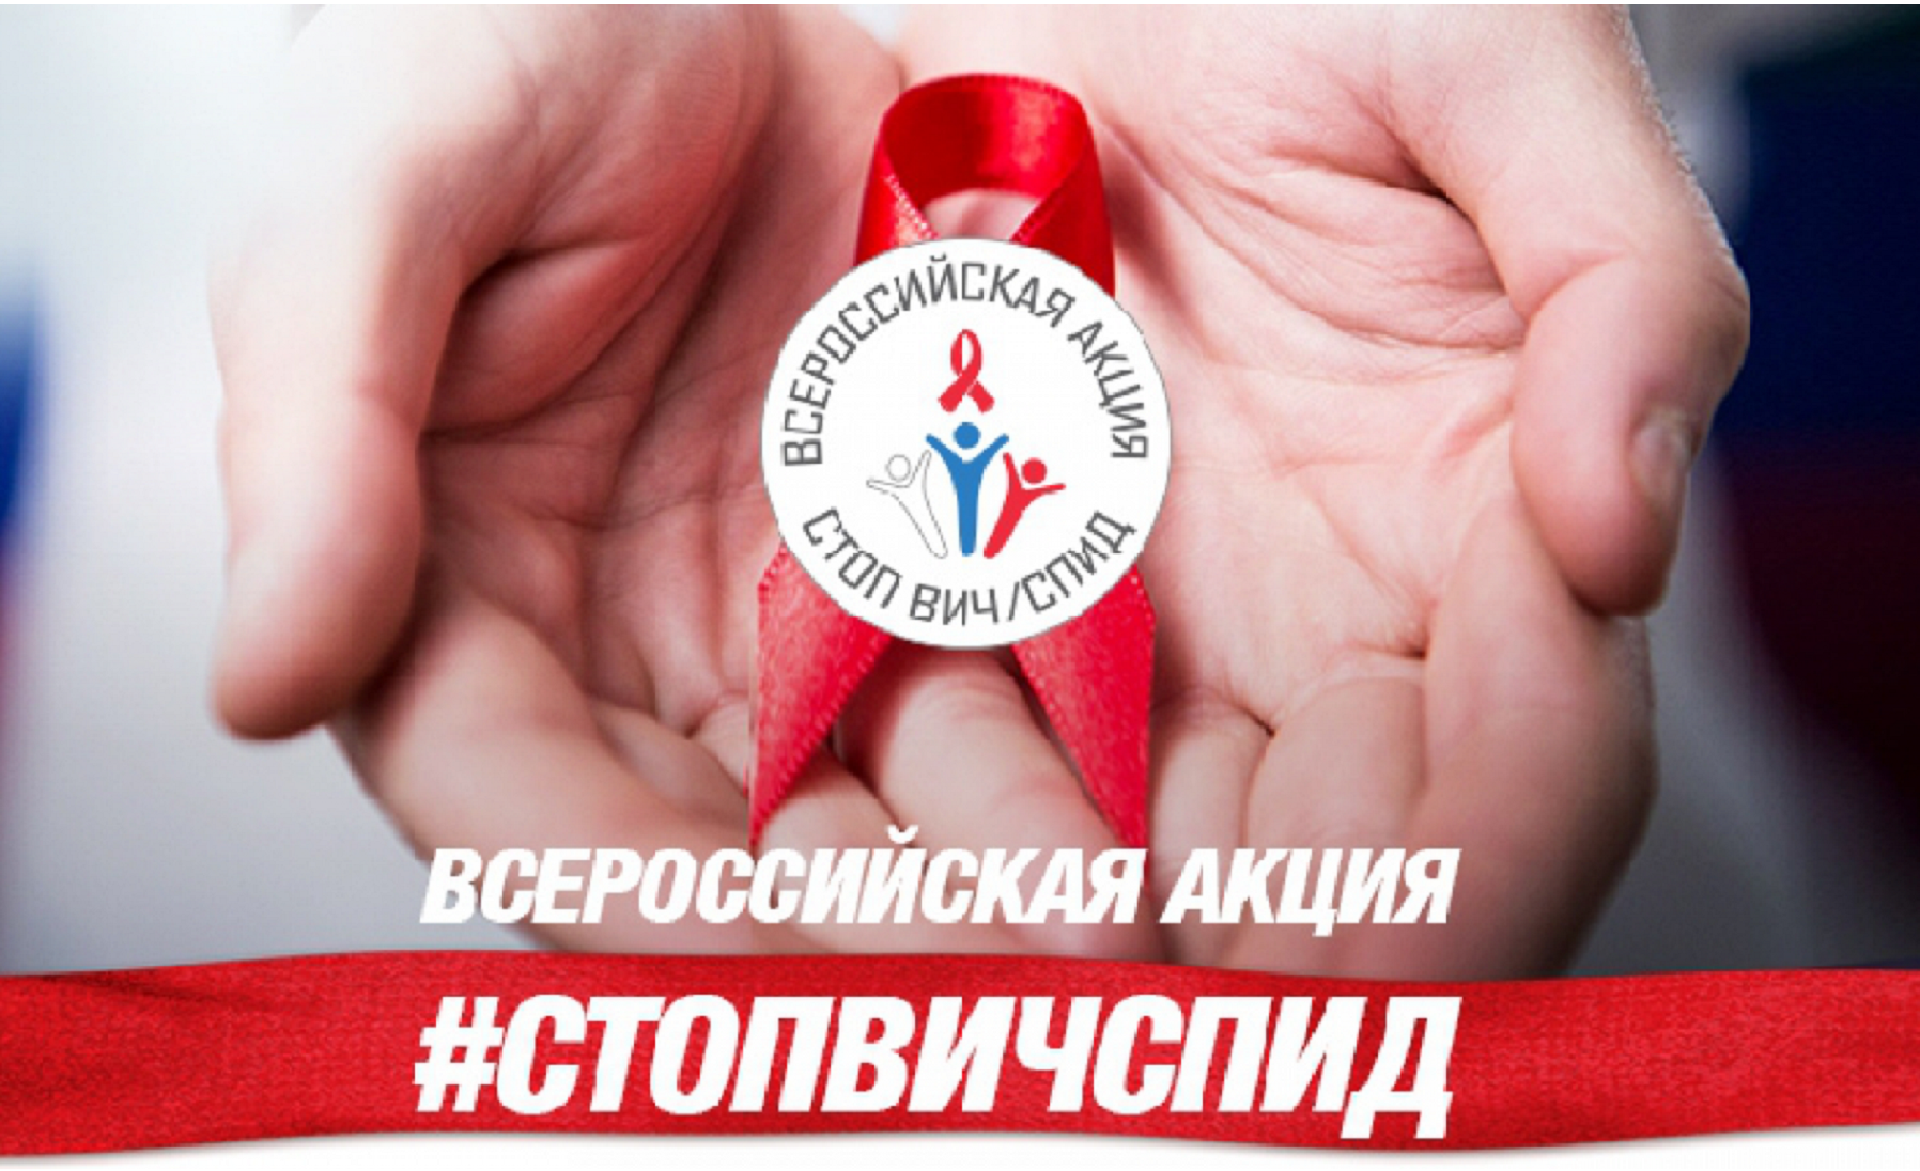 1 и 2 декабря пройдут мероприятия Всероссийской акции в рамках «Дня единых действий по информированию детей и молодежи против ВИЧ/СПИДа»